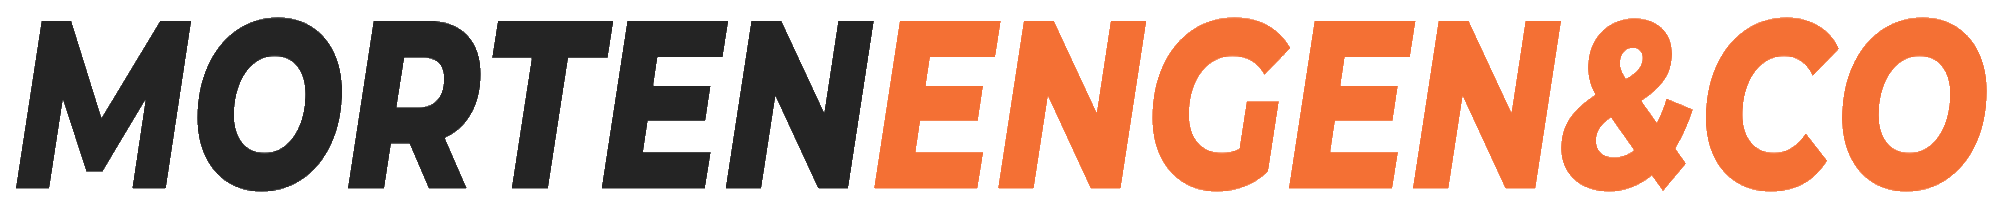 Morten Engen & Co. logo